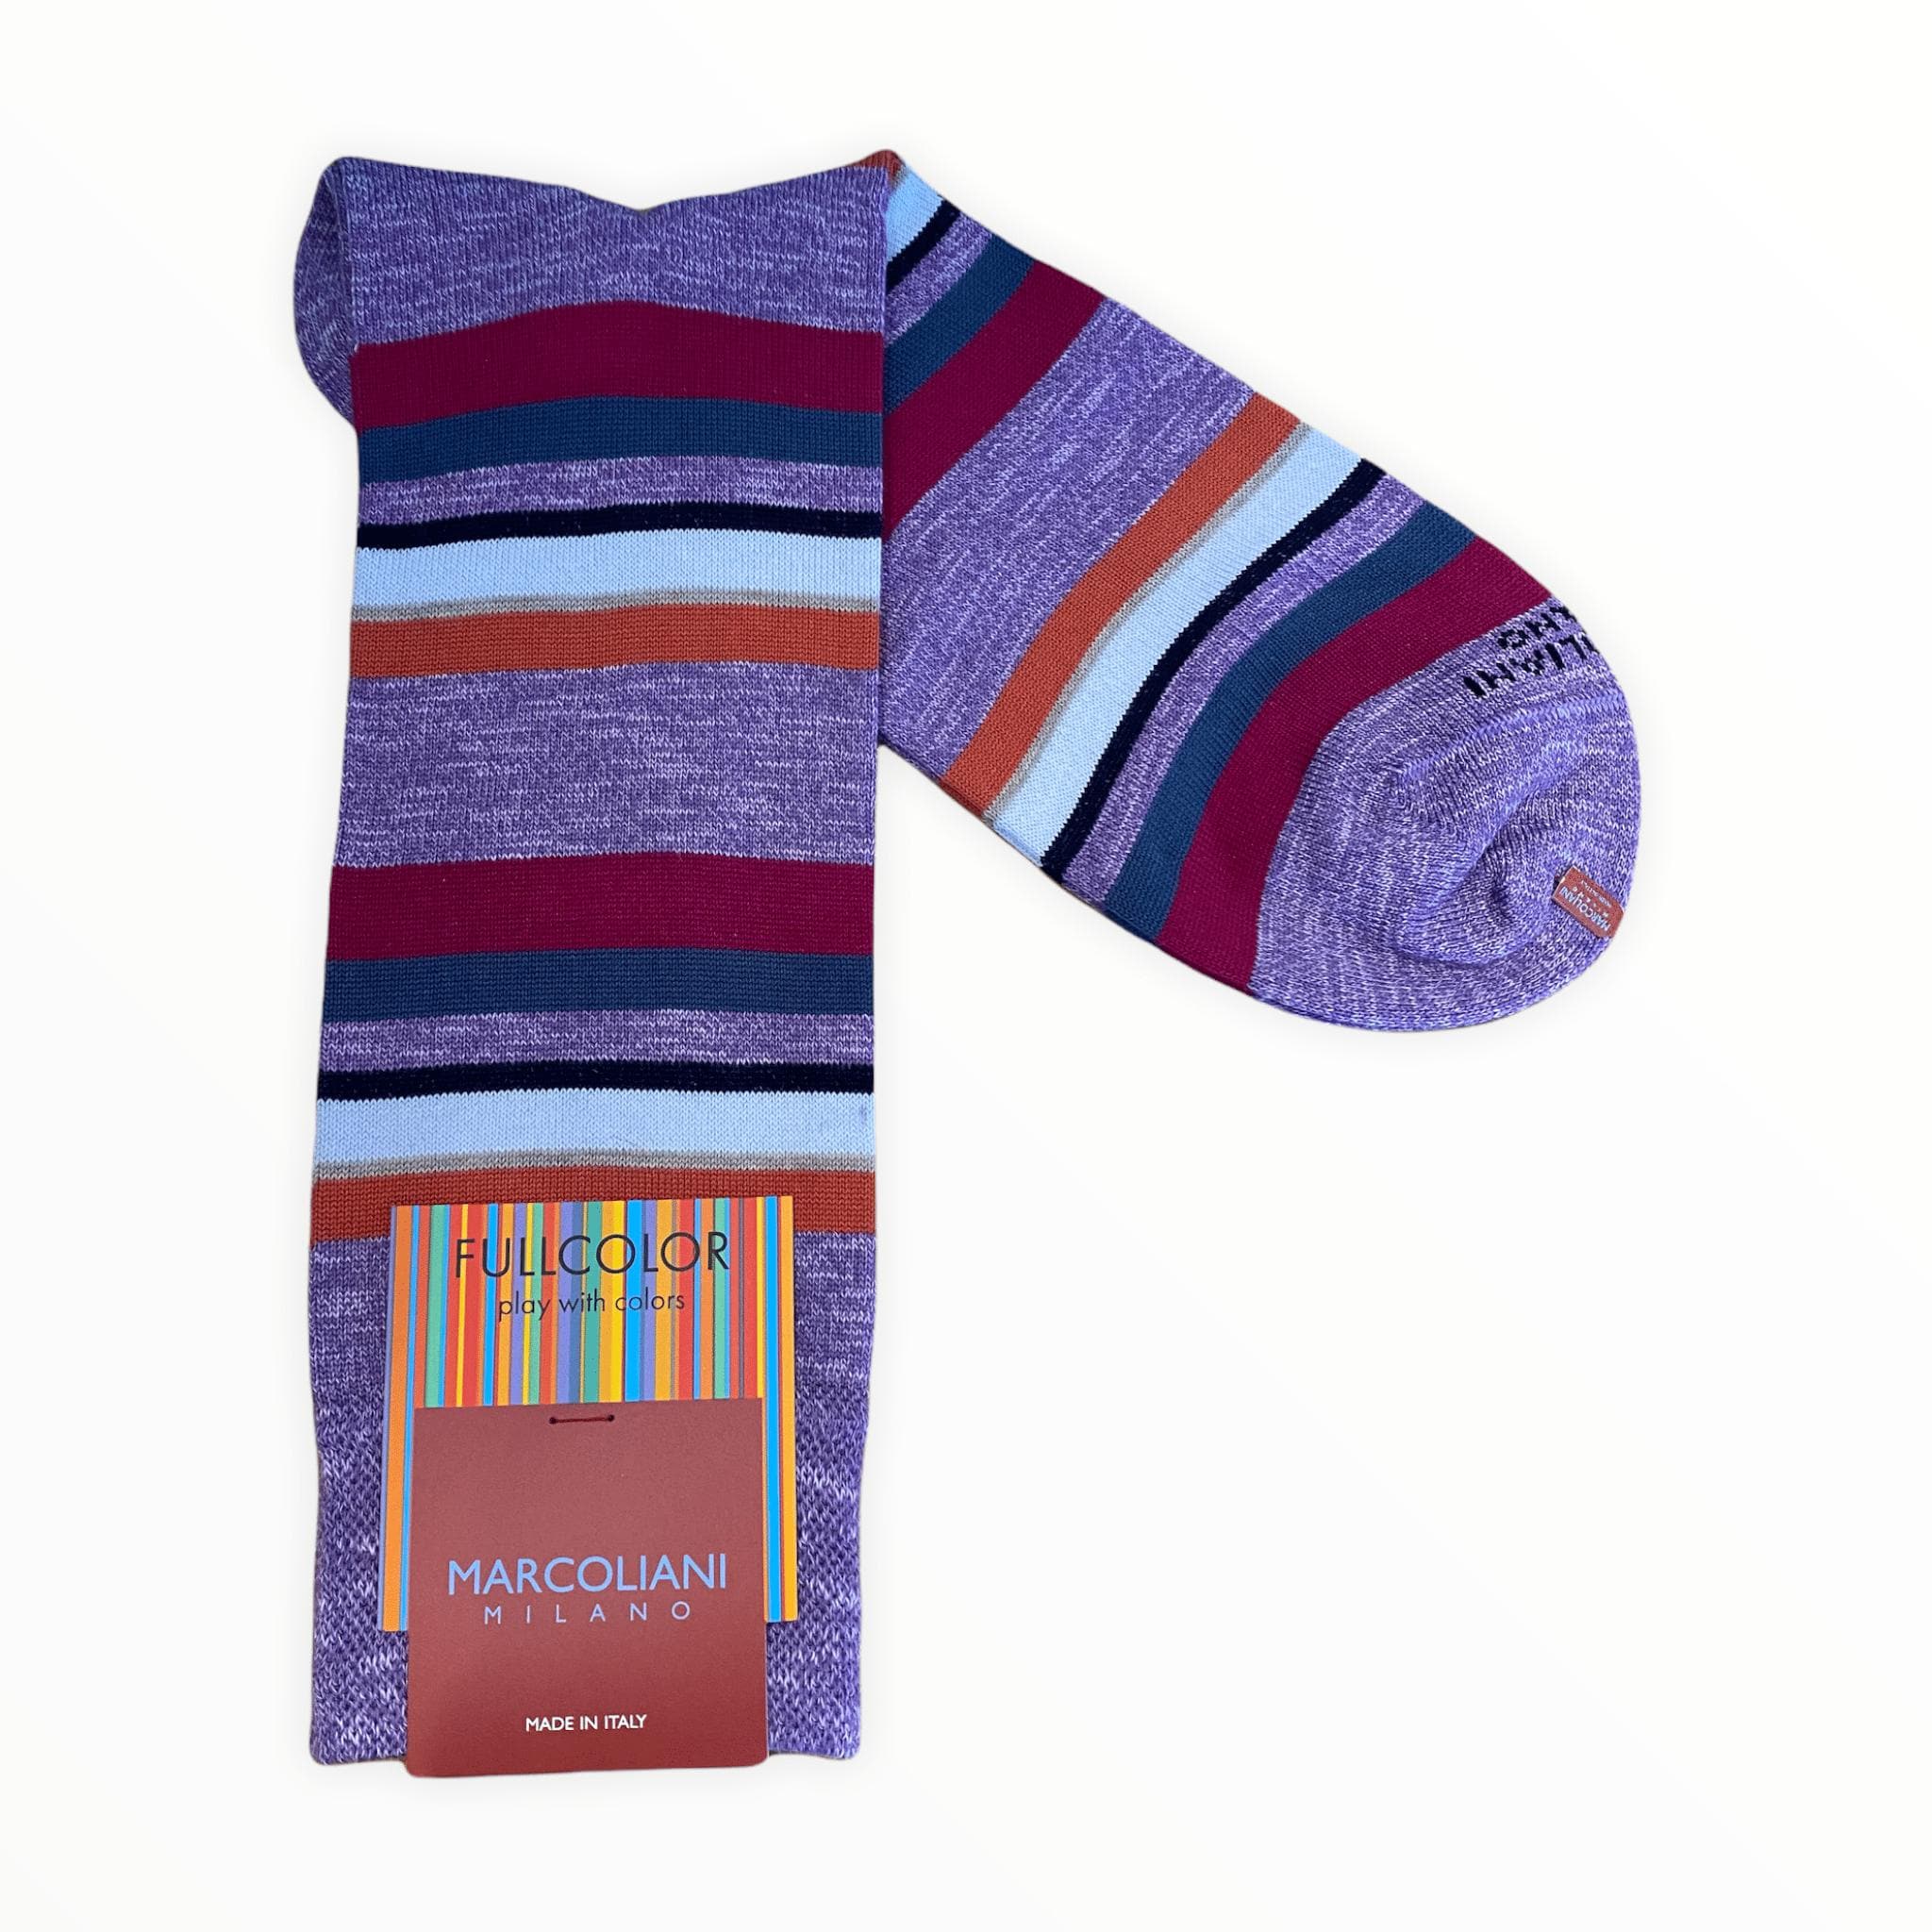 Marcoliani Men's Socks Lavender Pima Cotton Eclectic Stripe